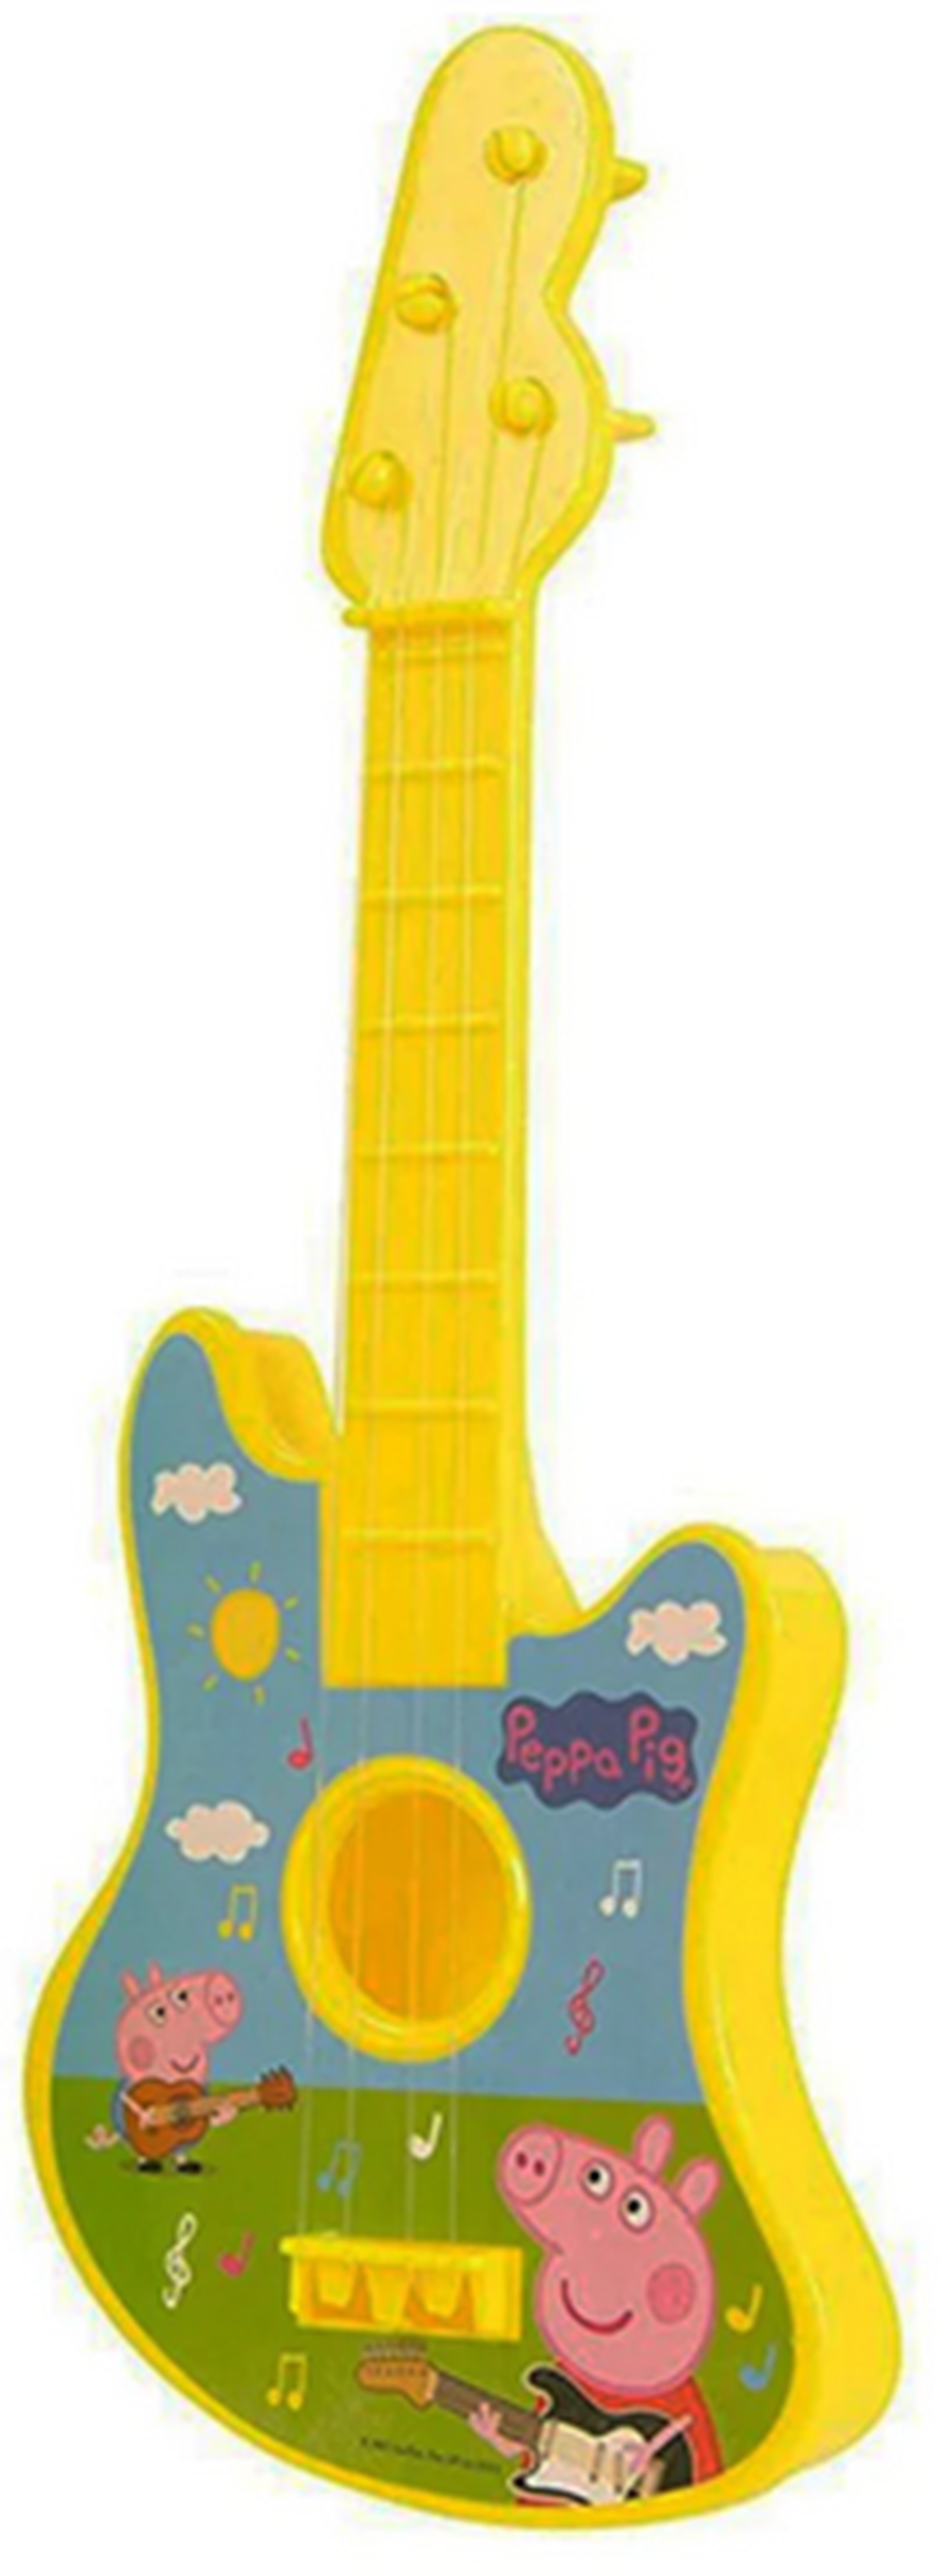 HTI Peppa Pig Guitar